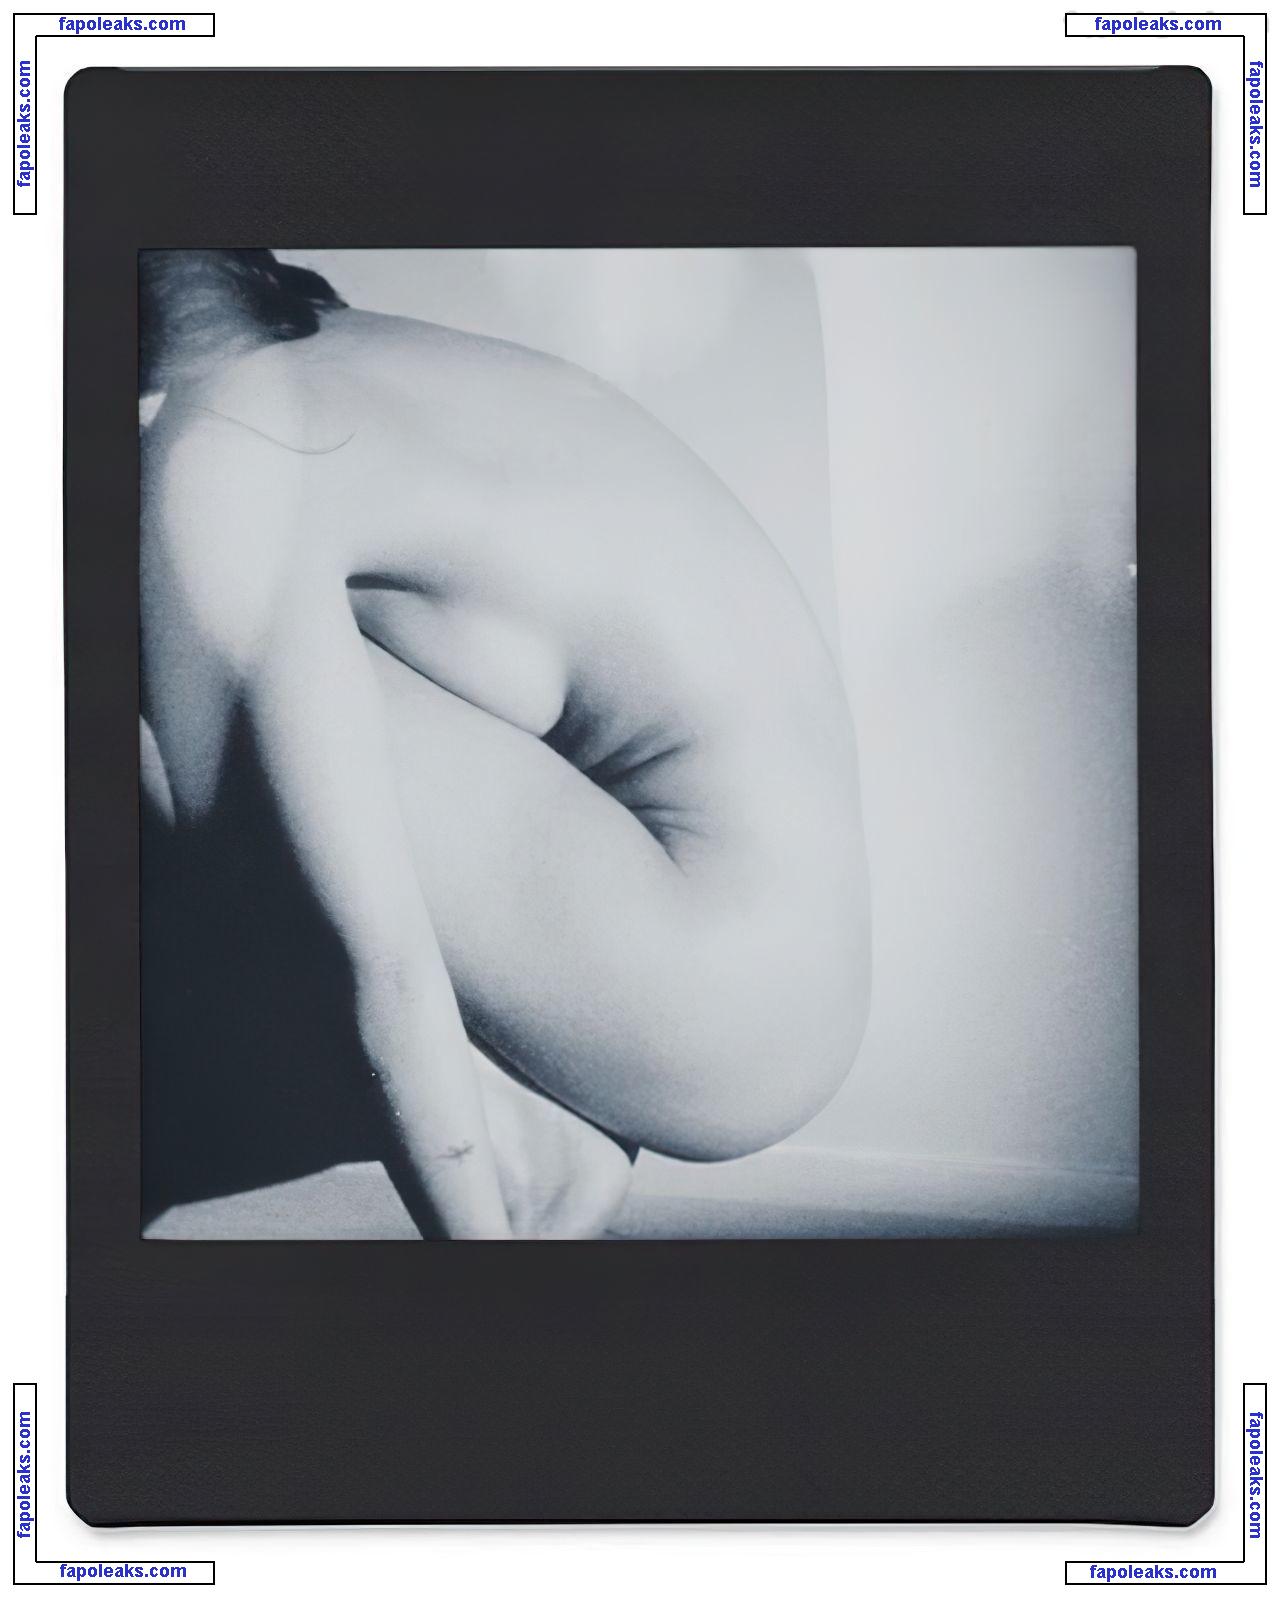 Mimi Elashiry / mimielashiry nude photo #0221 from OnlyFans